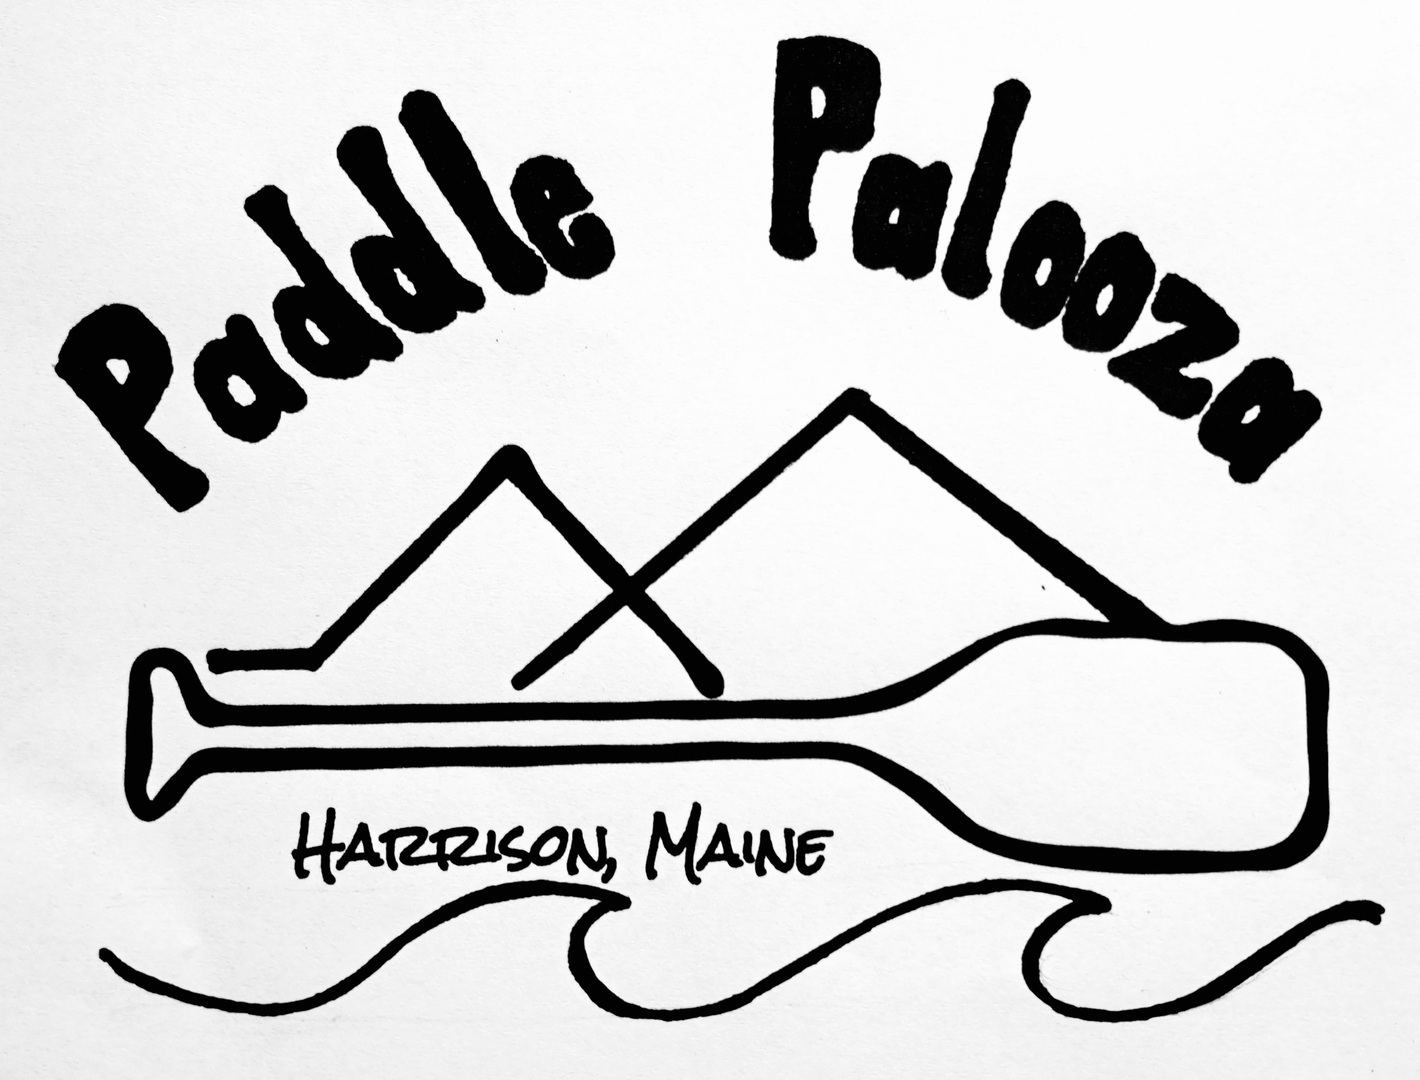 Paddle Palooza, Harrison, Maine, United States